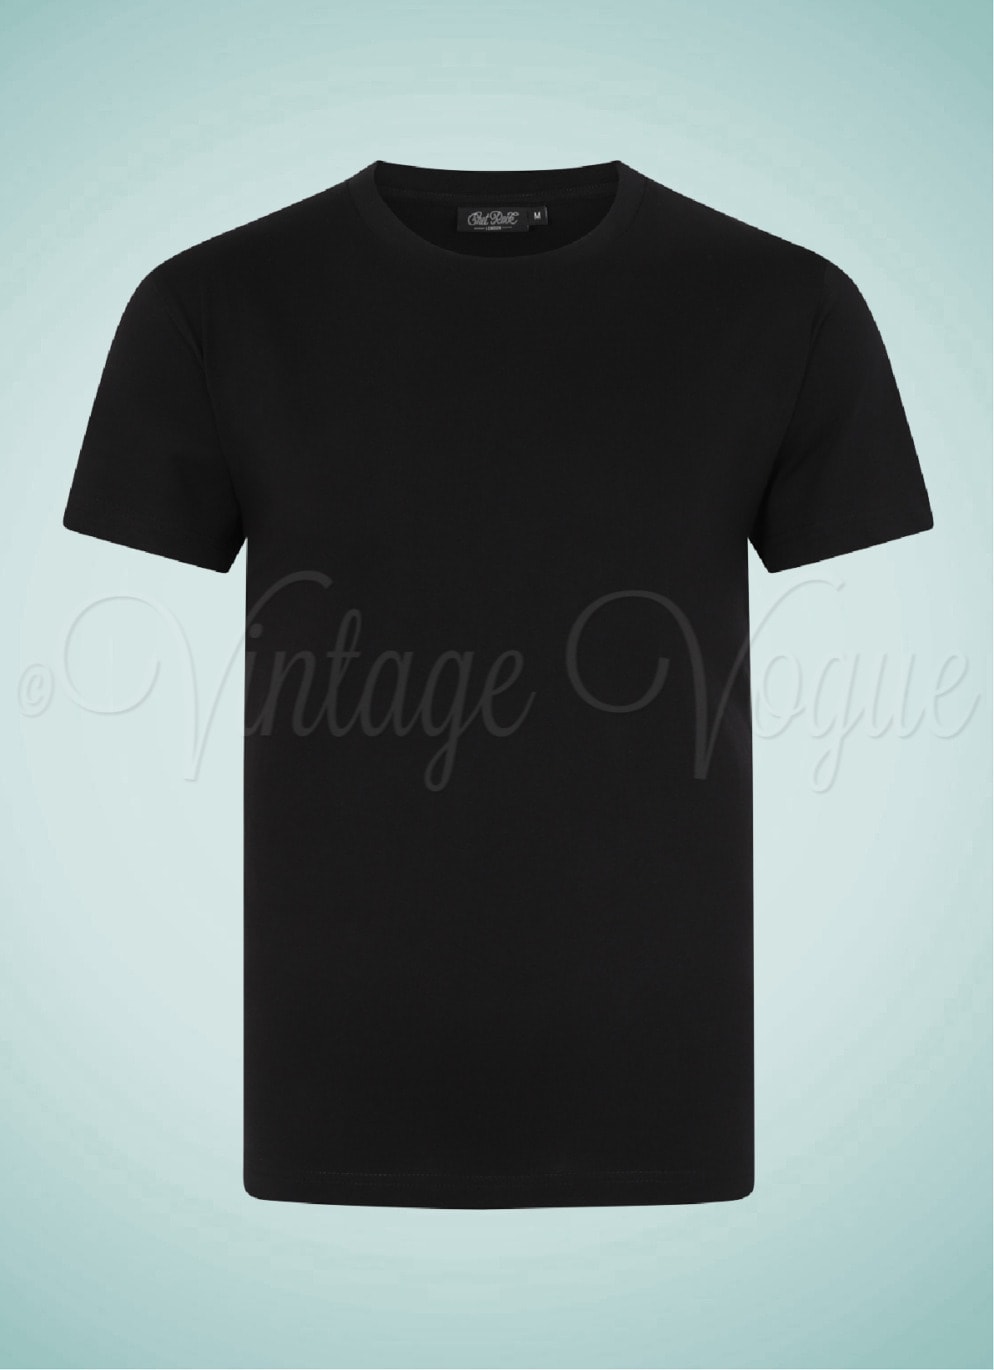 20006010 Chet Rock Retro Basic Plain Herren T-Shirt Plain Short Sleeve Shirt in Schwarz